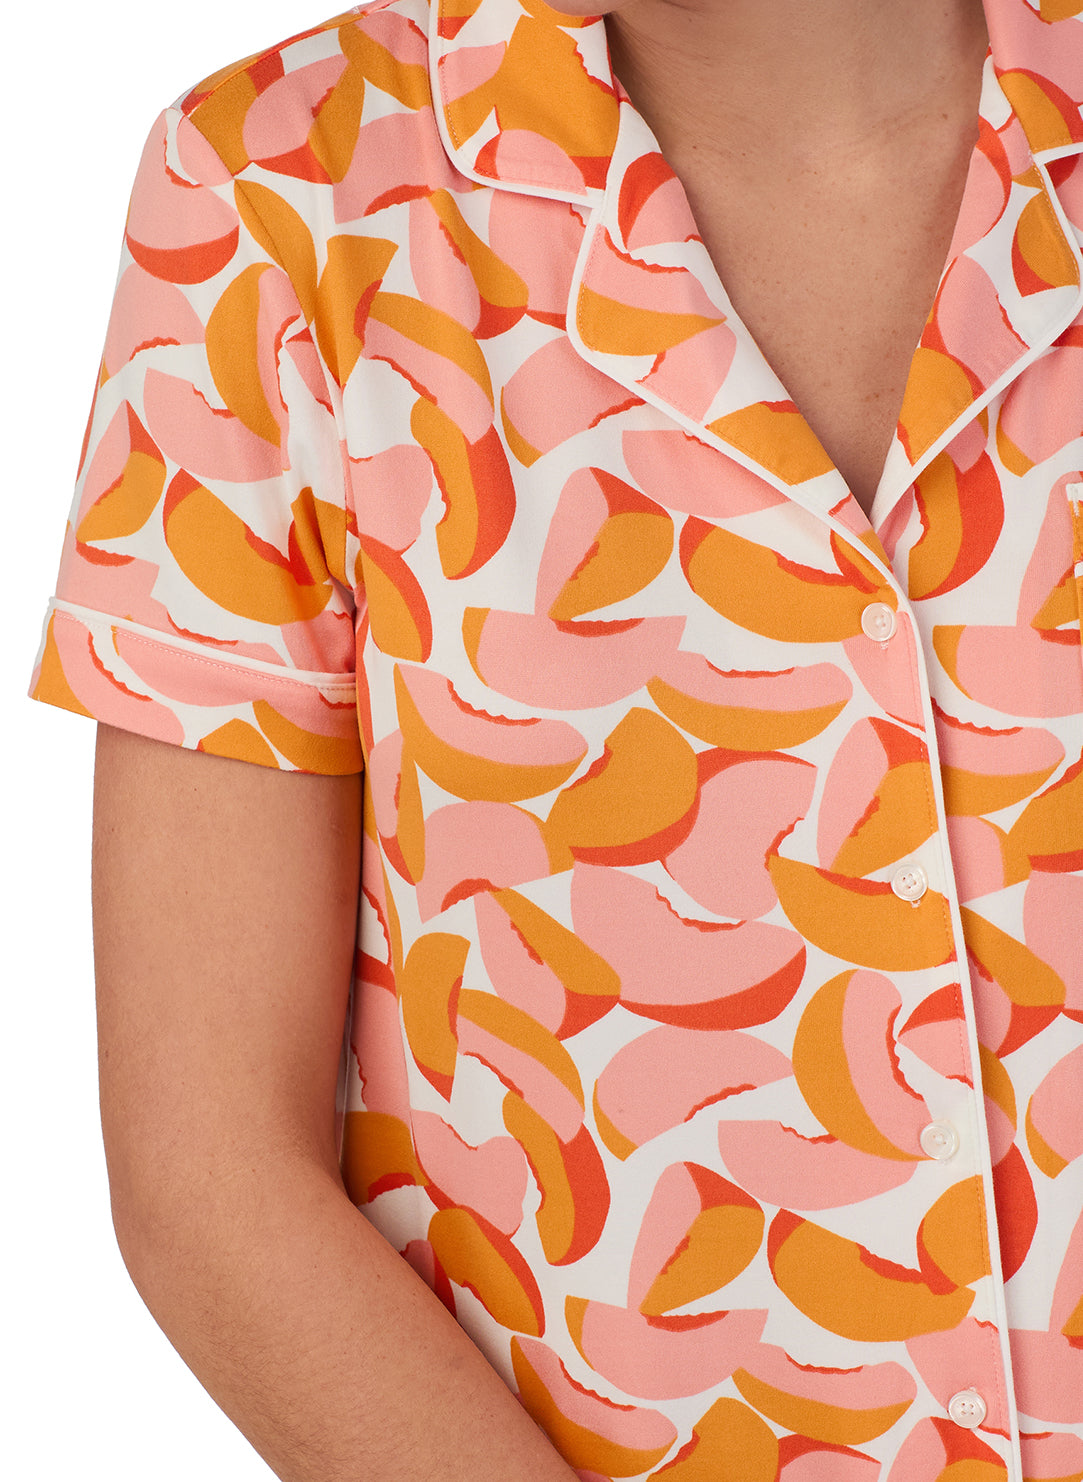 Peaches Dense Orange Short Sleeved Cropped Pajama Set